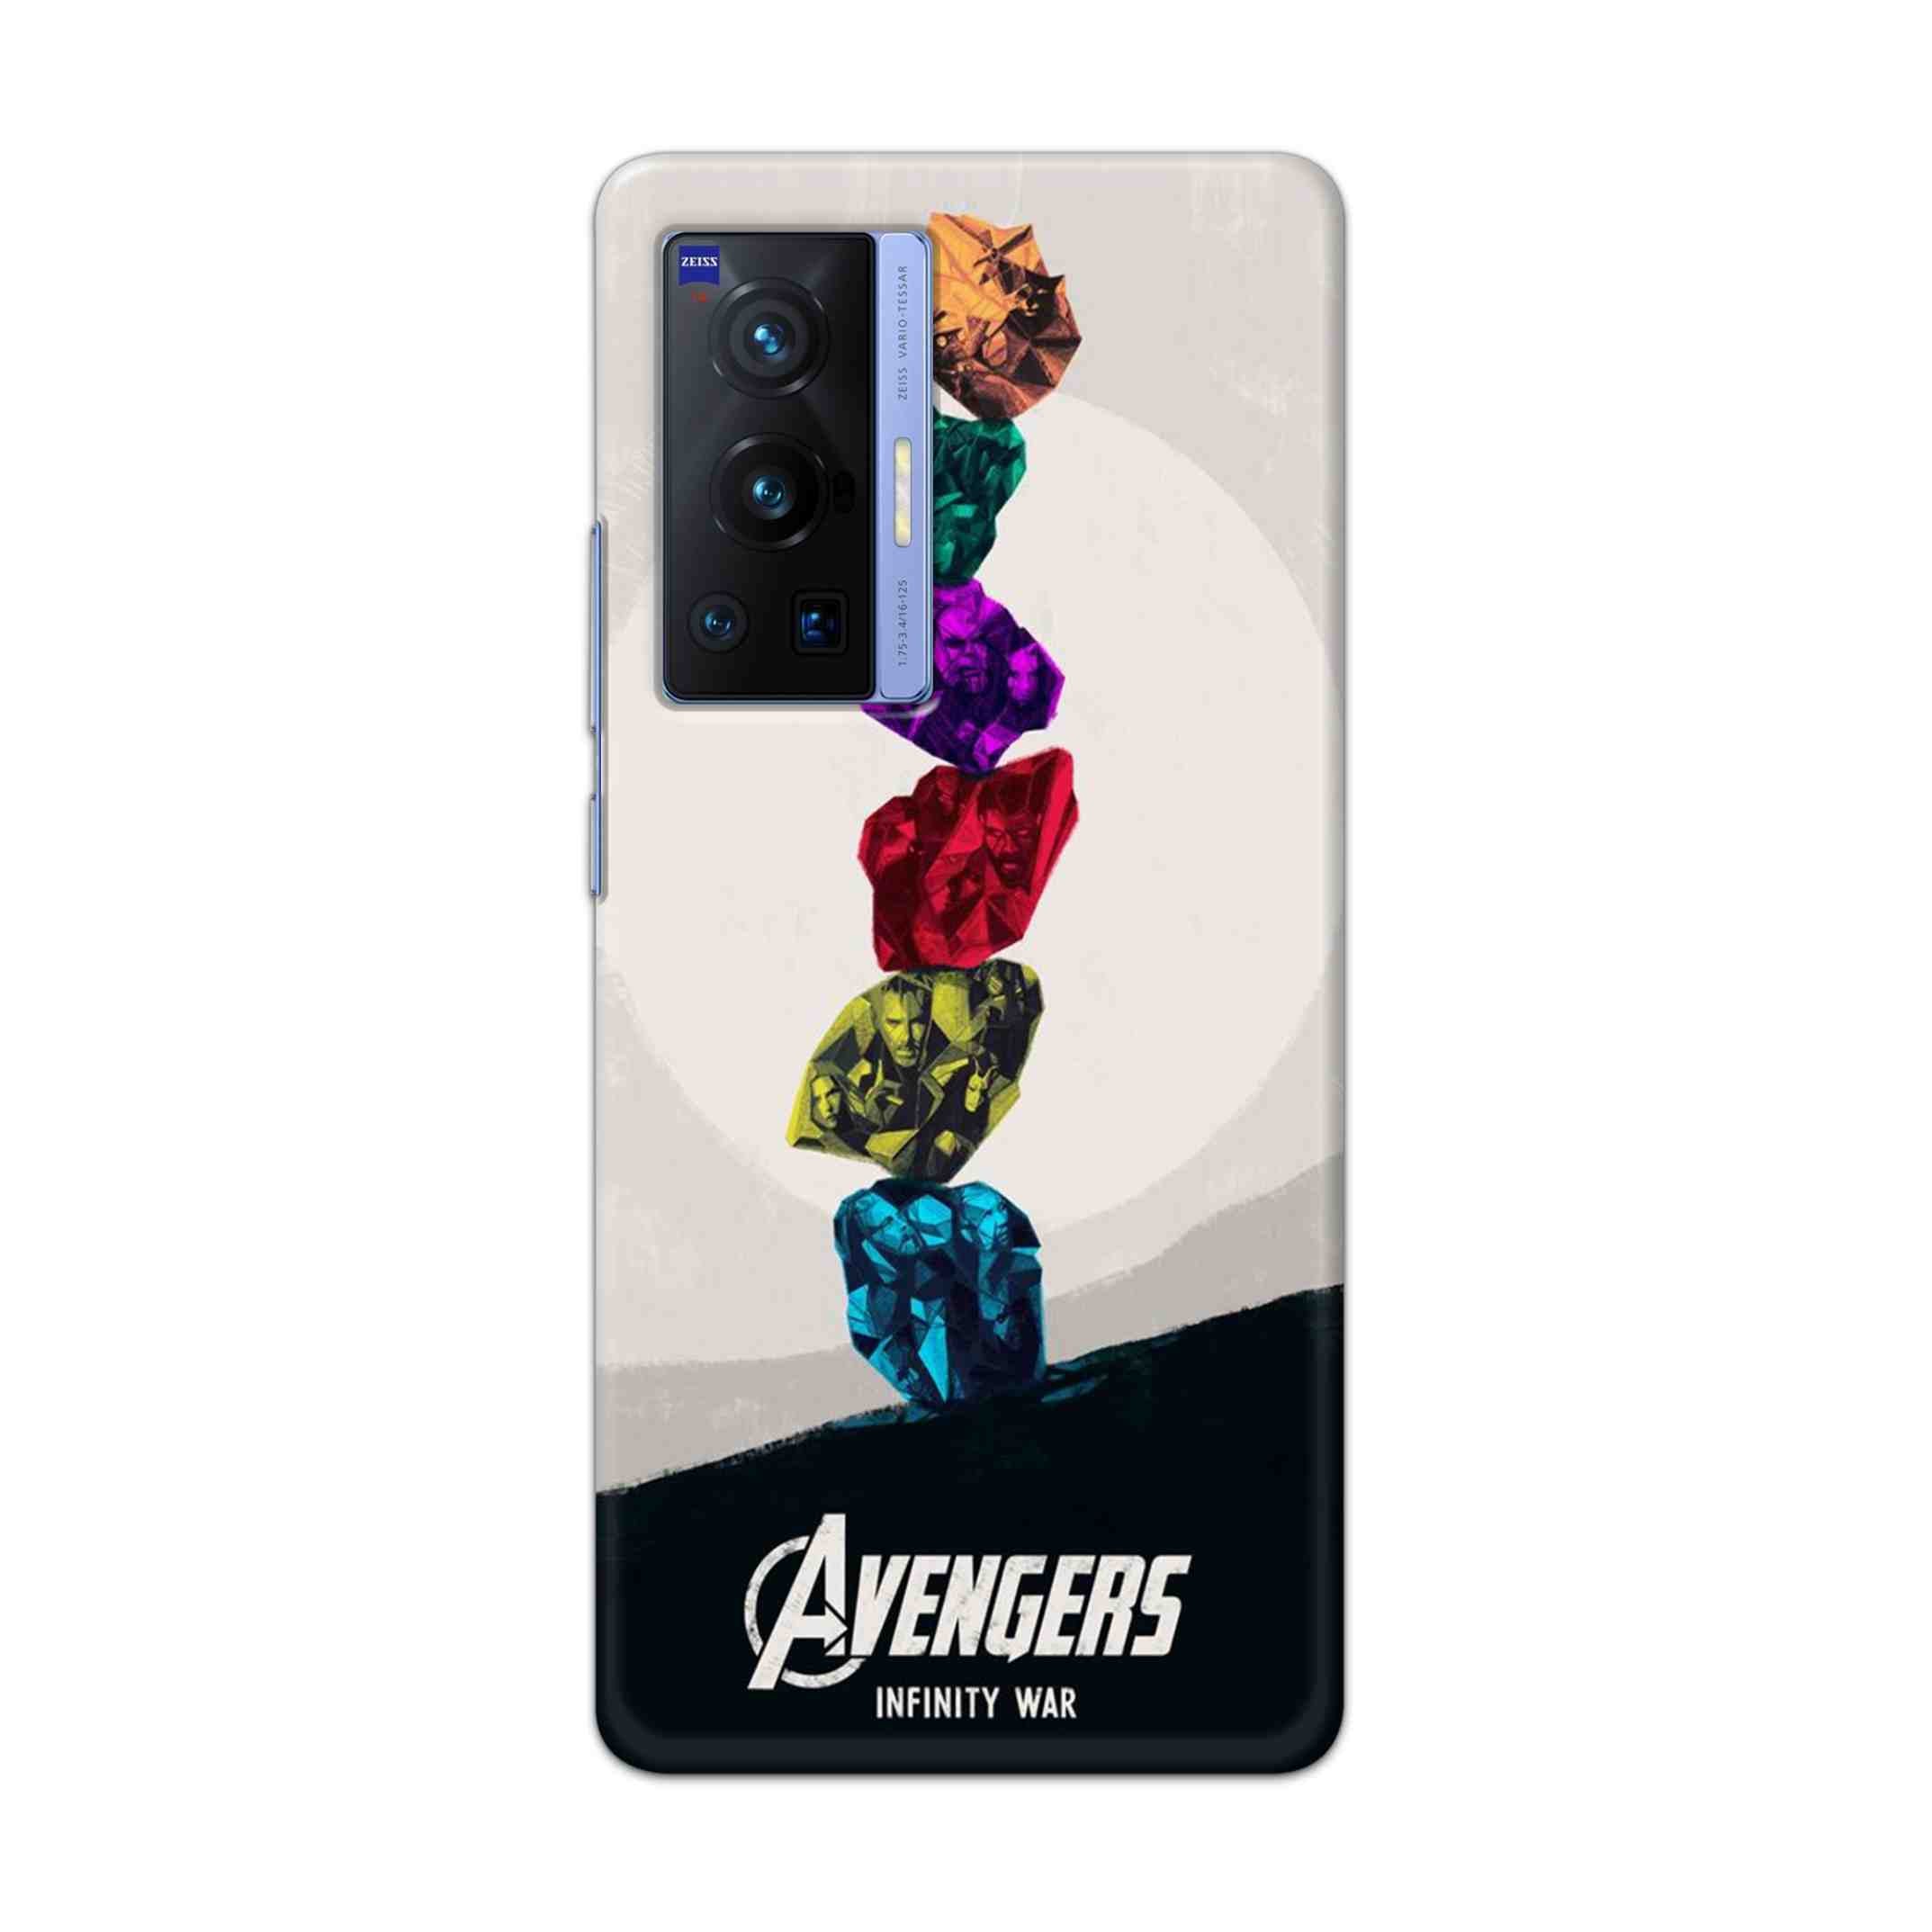 Buy Avengers Stone Hard Back Mobile Phone Case Cover For Vivo X70 Pro Online